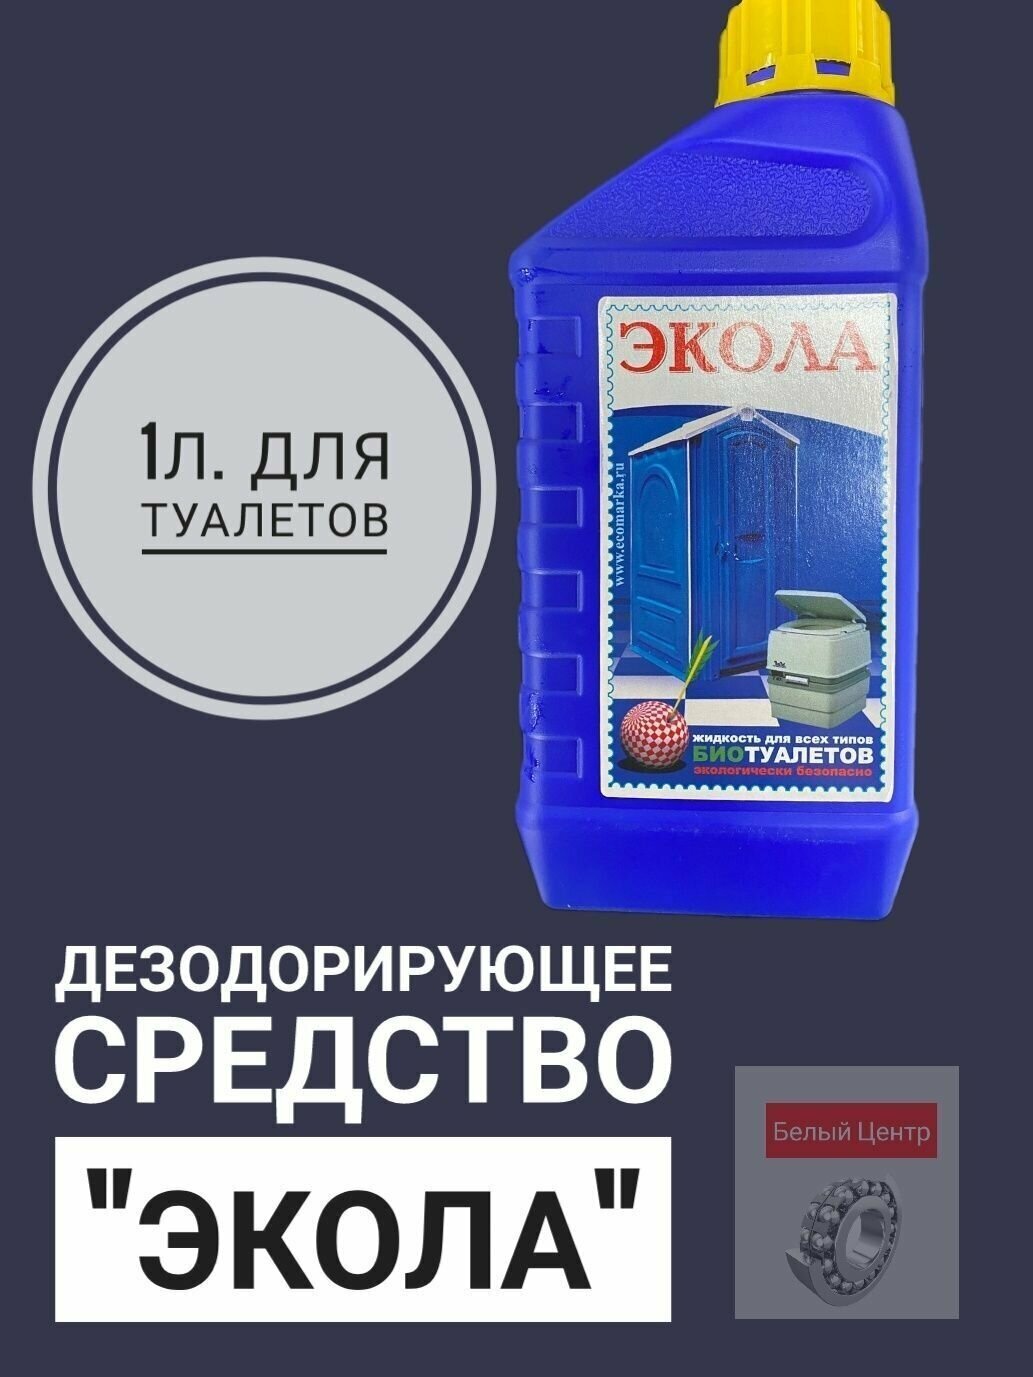 Дезодорирующее средство "экола" 1л. для туалетов